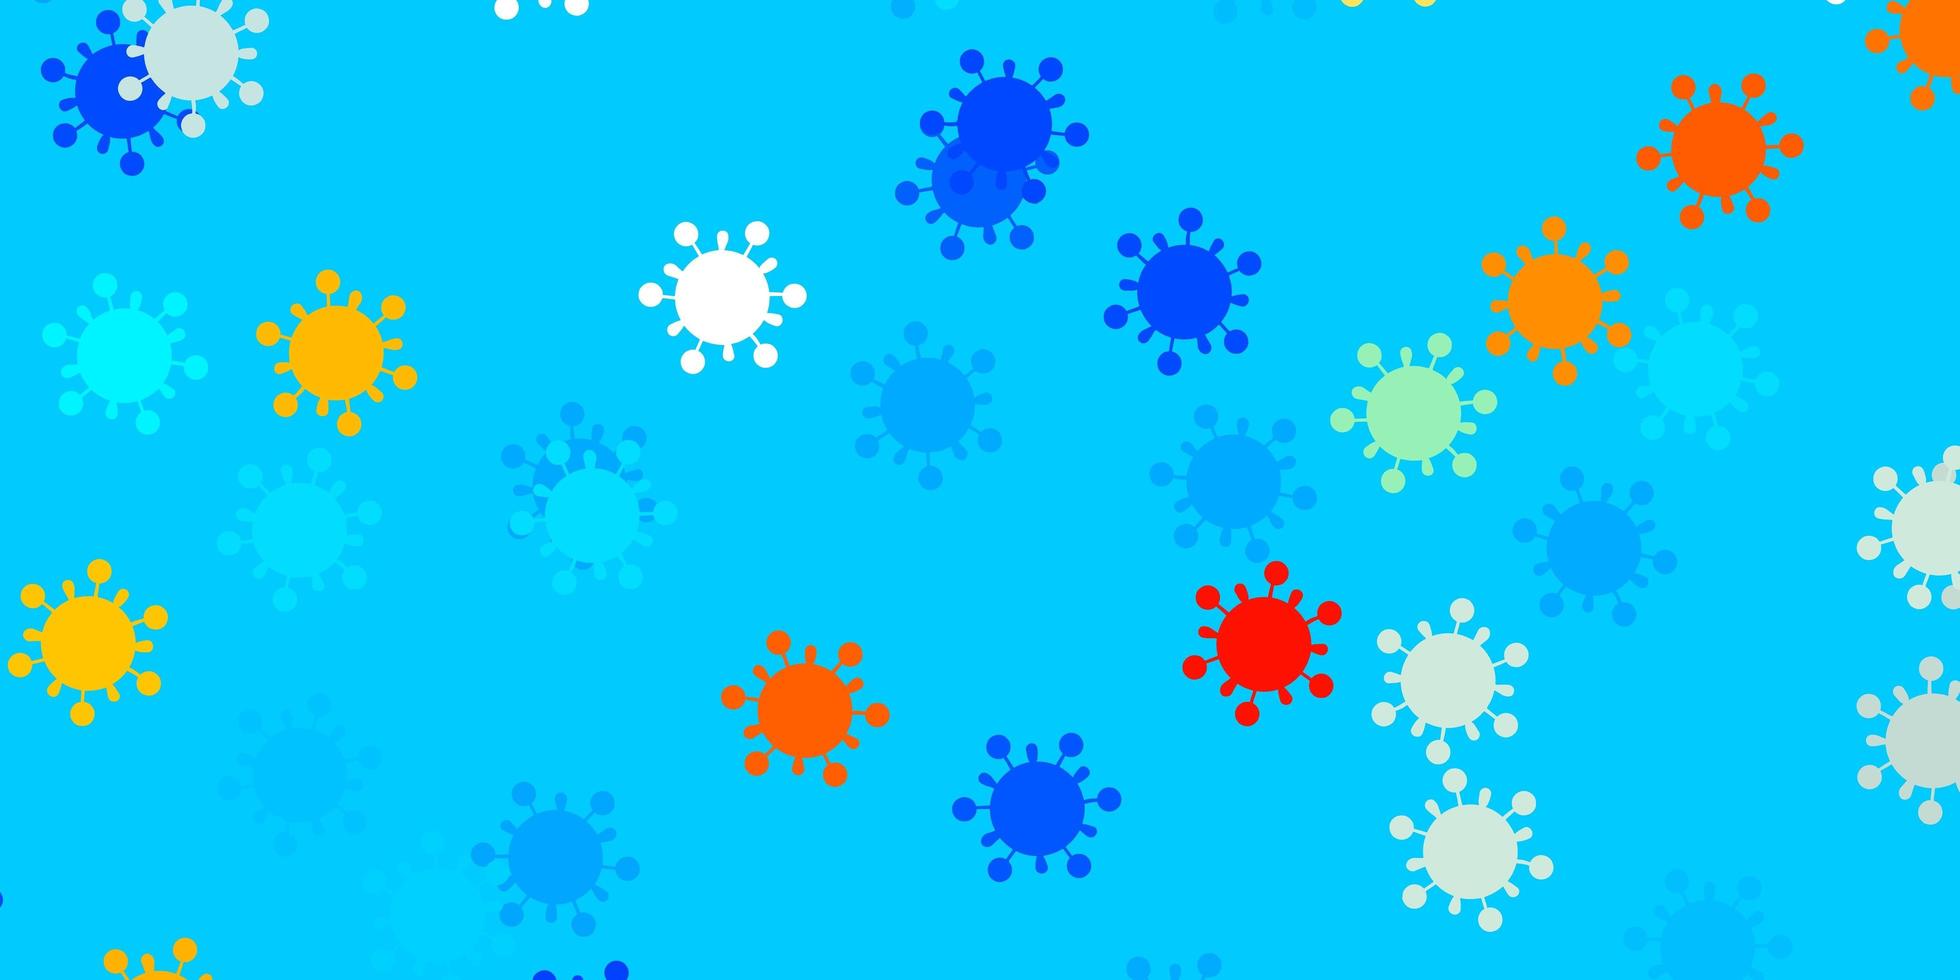 ljusblå, röd vektormall med influensatecken. vektor